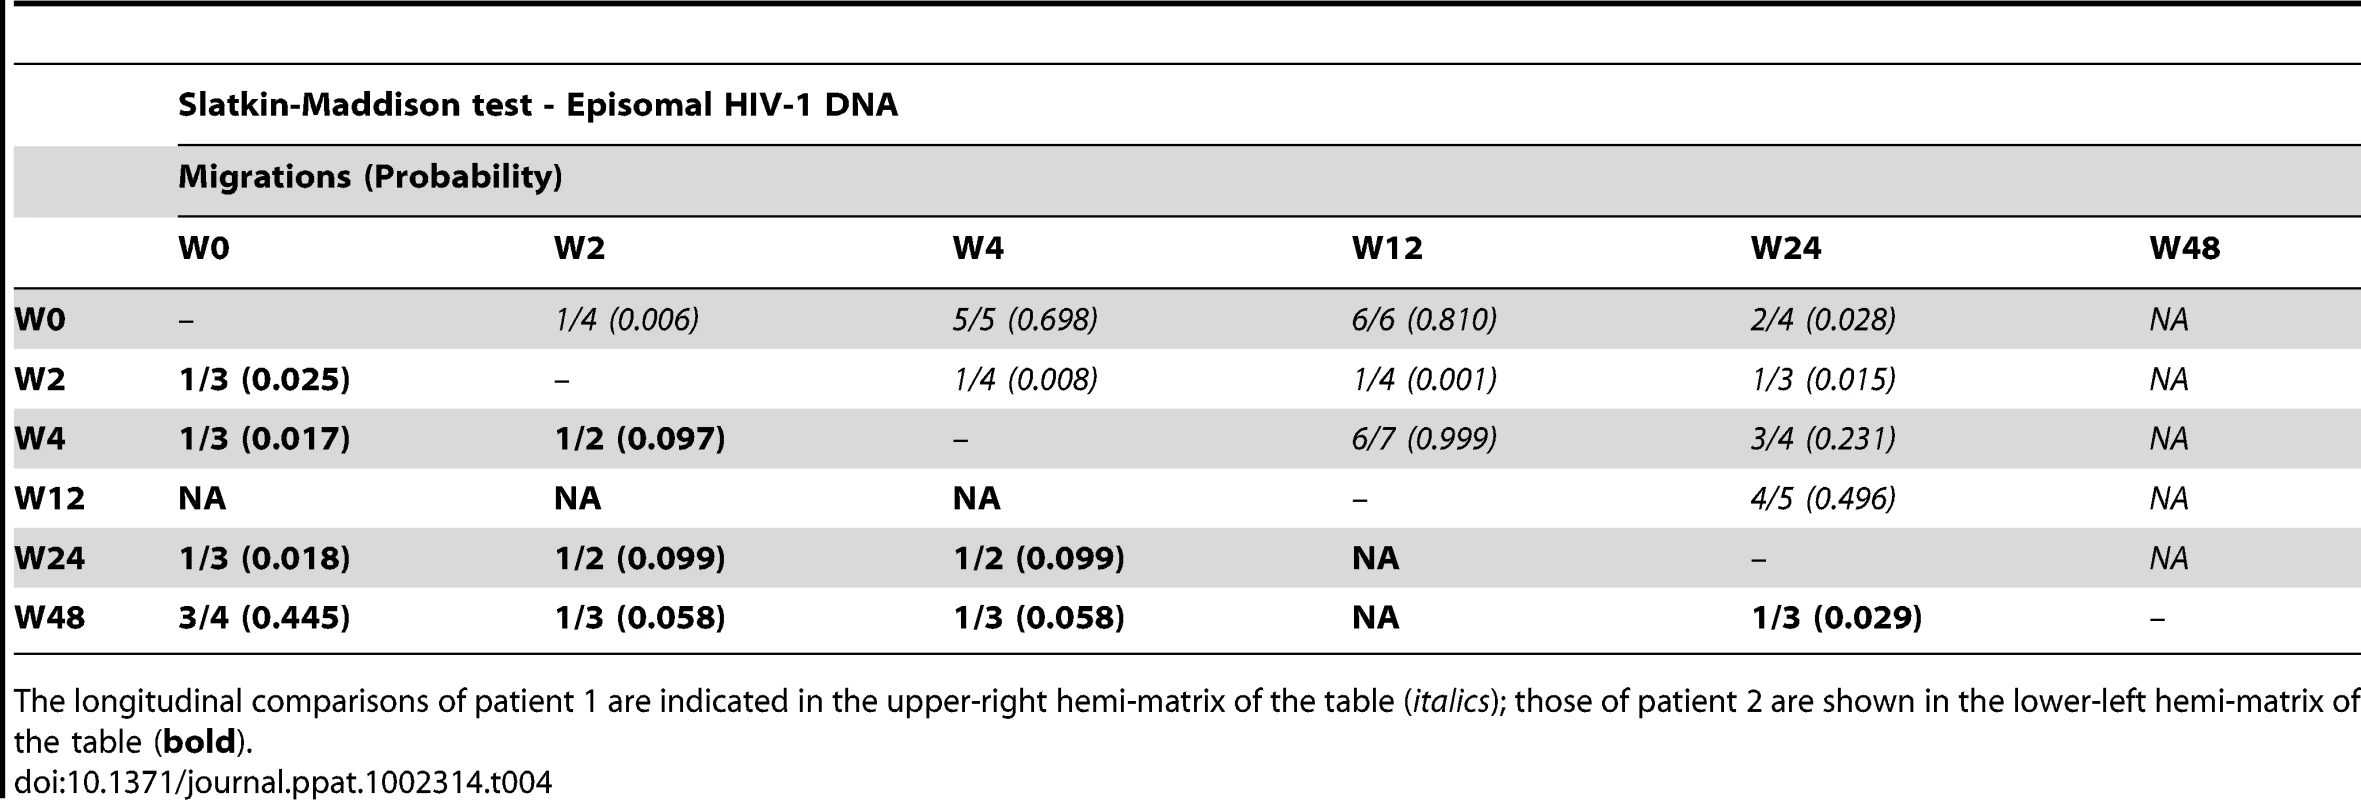 Temporal population structure: Slatkin-Maddison test for comparison between longitudinal episomal HIV-1 DNA.